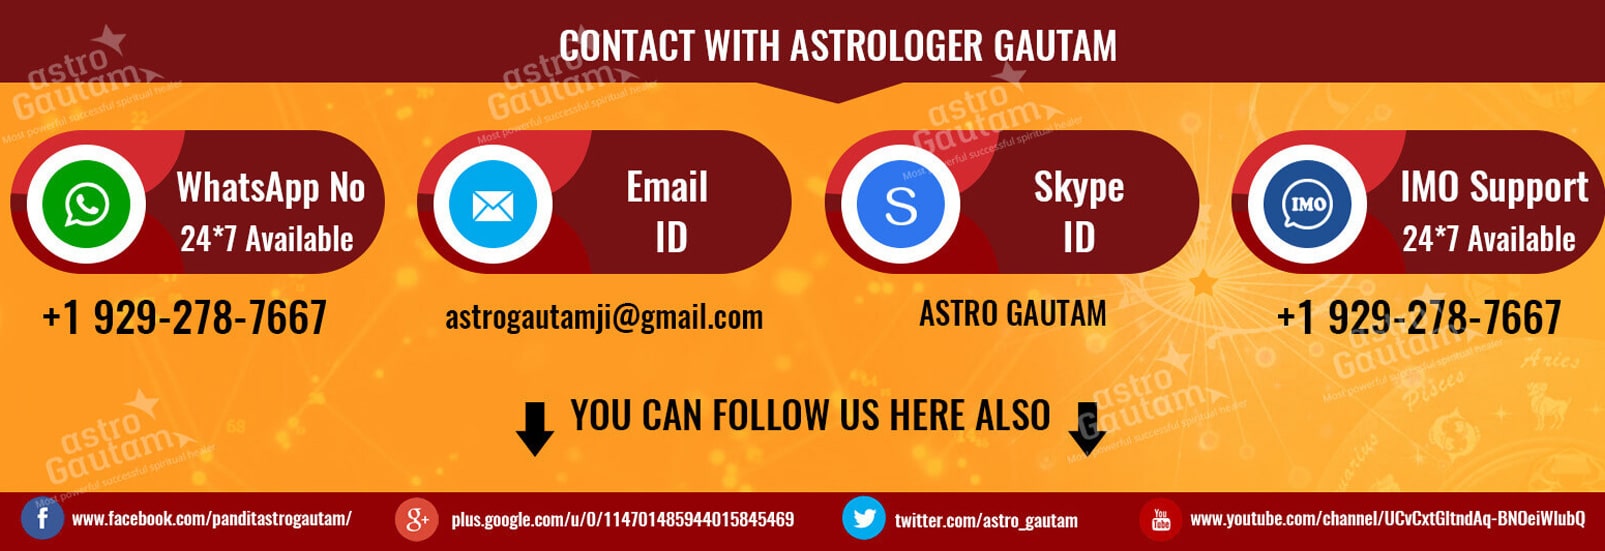 Astrologer Gautam Astrology Services Banner